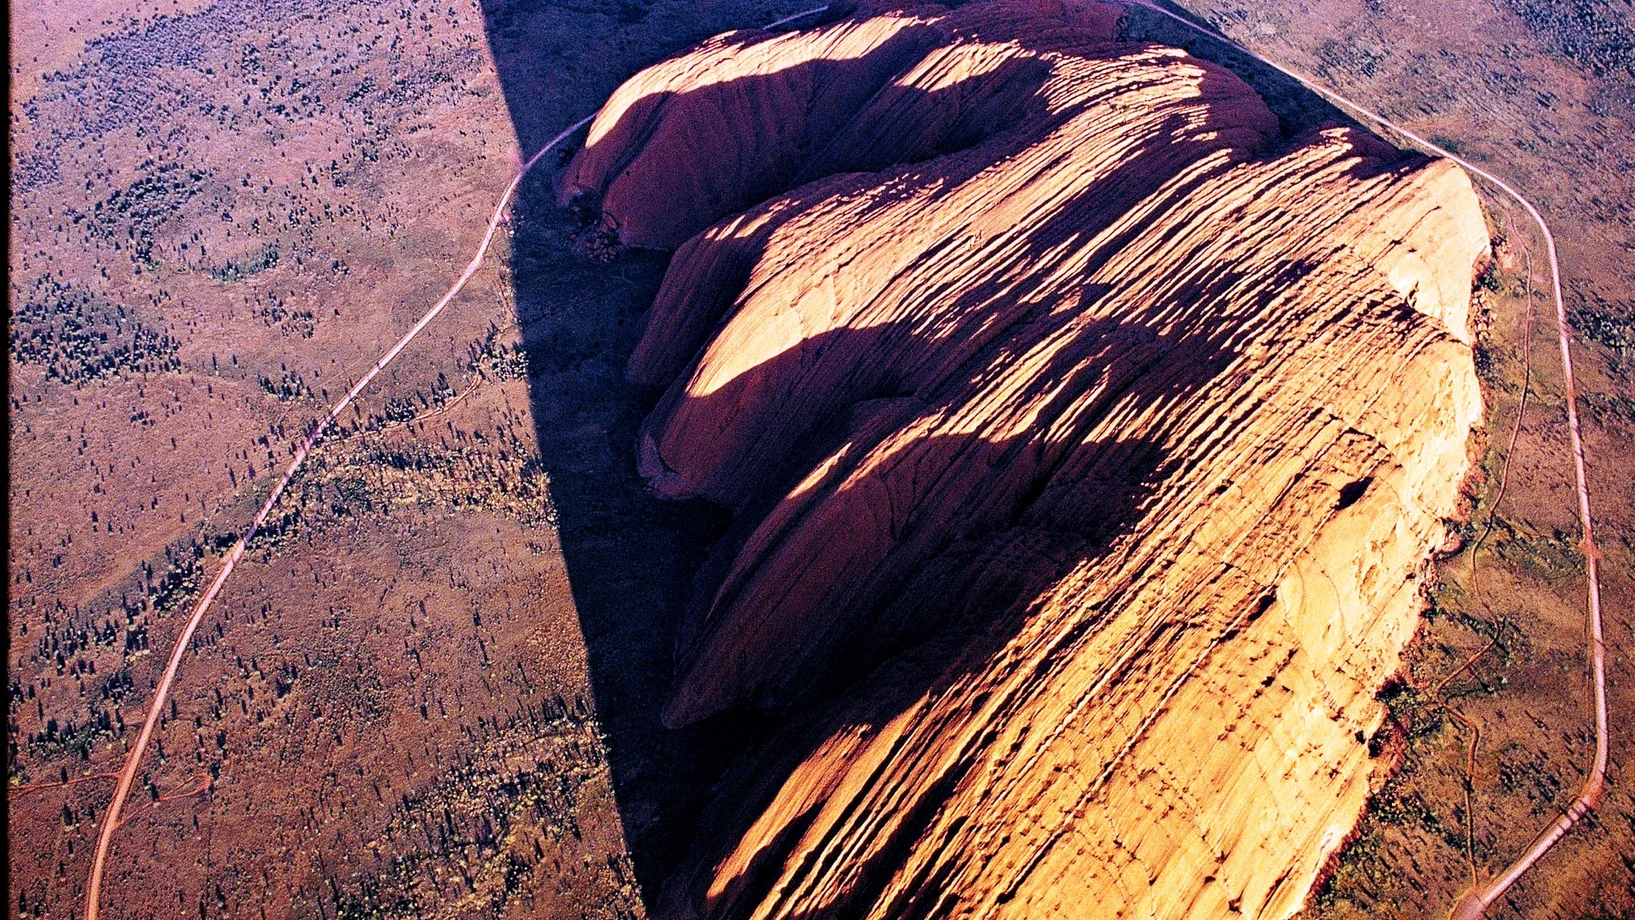 Der Uluru, 348 Meter über die umgebende Wüste emporragend, ist ein Berg der dritten Art: ganz eingesponnen in die „Traumzeit“ der örtlichen Ureinwohner.
Mag ja sein, dass der Fels im roten toten Herzen Australiens schon kraft seiner Natur weltweit einzigartig ist – mitnichten ist er aber ein Monolith, obwohl sogar die Unesco dieses Touristenlatein nachplappert. Und als Inselberg aus geschichtetem Sandstein, den Erosion und Verwitterung aus einer Rumpffläche herauspräparierten, ist er nicht einmal – so ein…